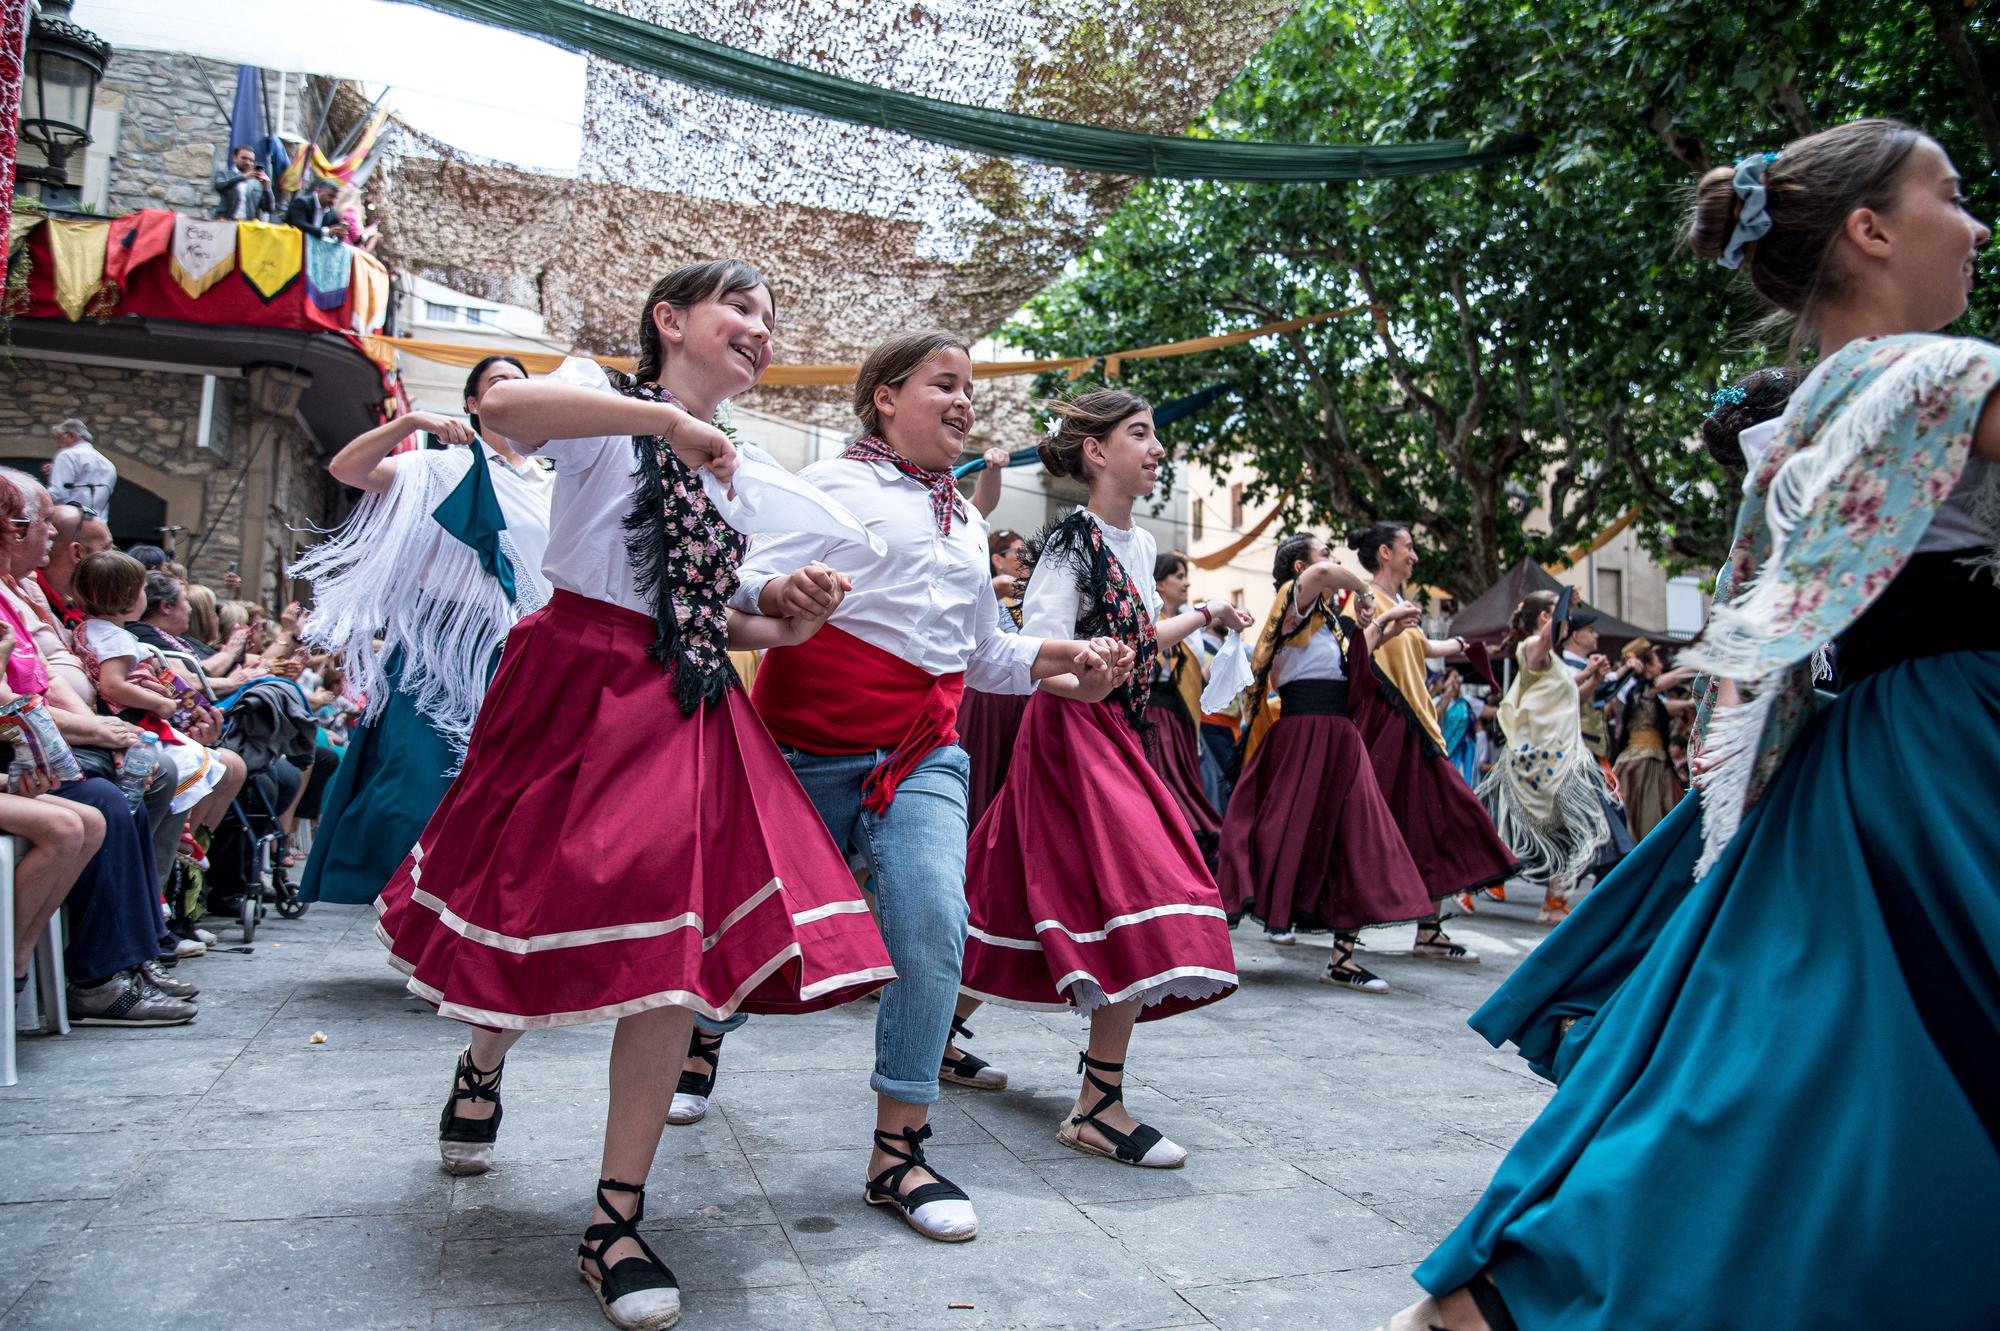 Troba't a les fotos del multitudinari ball de gitanes de Sant Vicenç